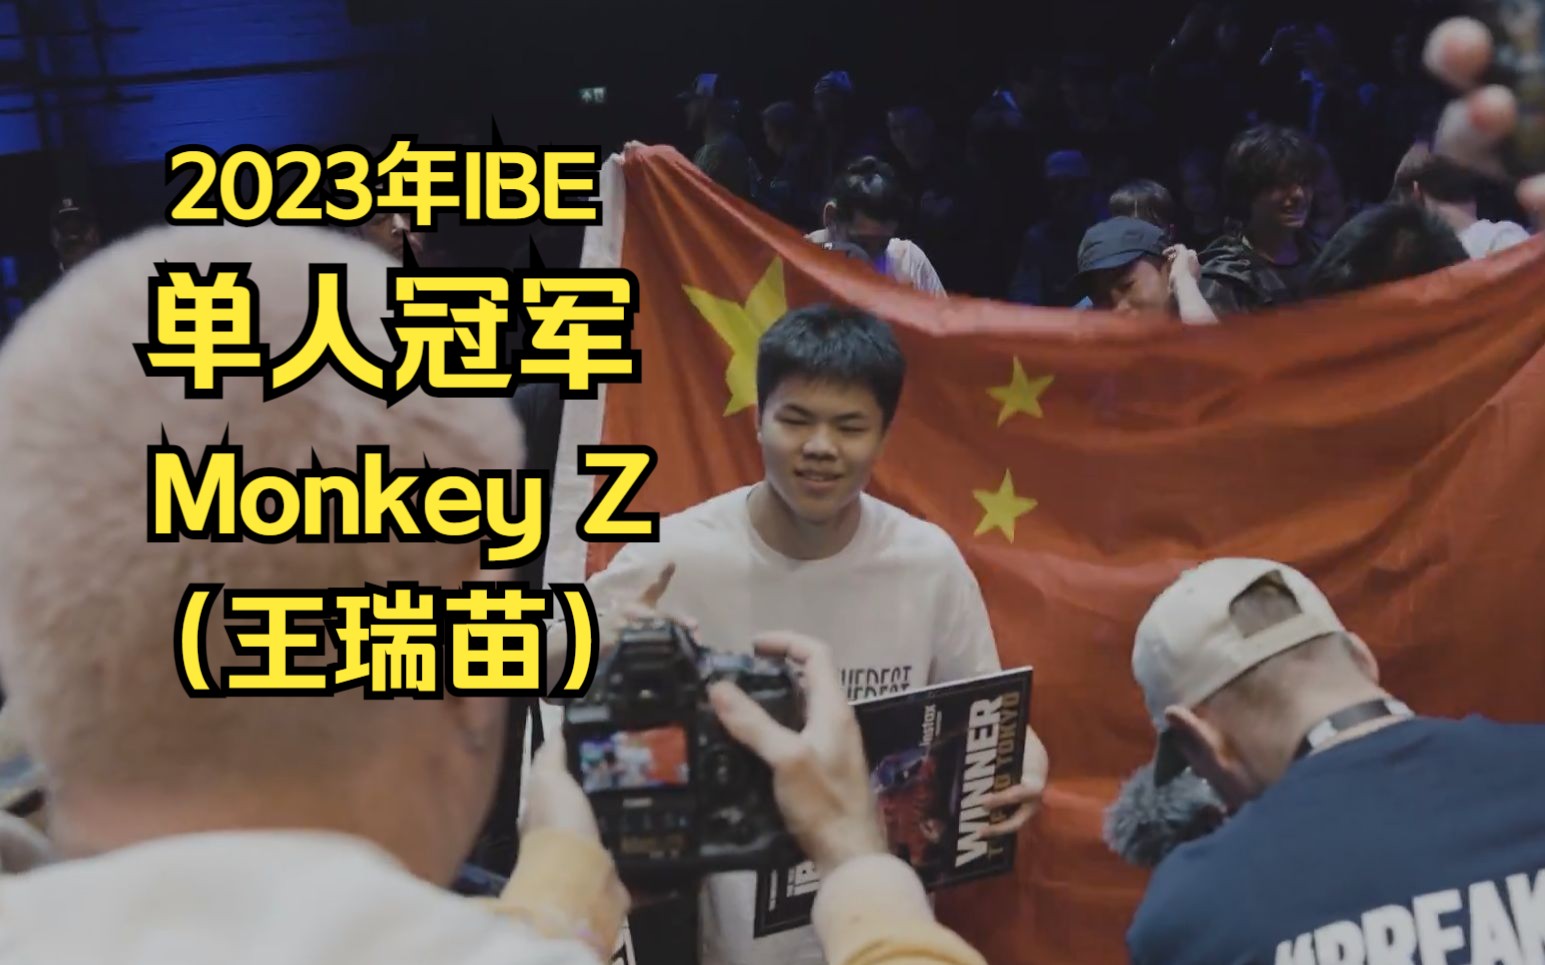 2023IBE单人冠军Monkey Z（王瑞苗）的精彩表现